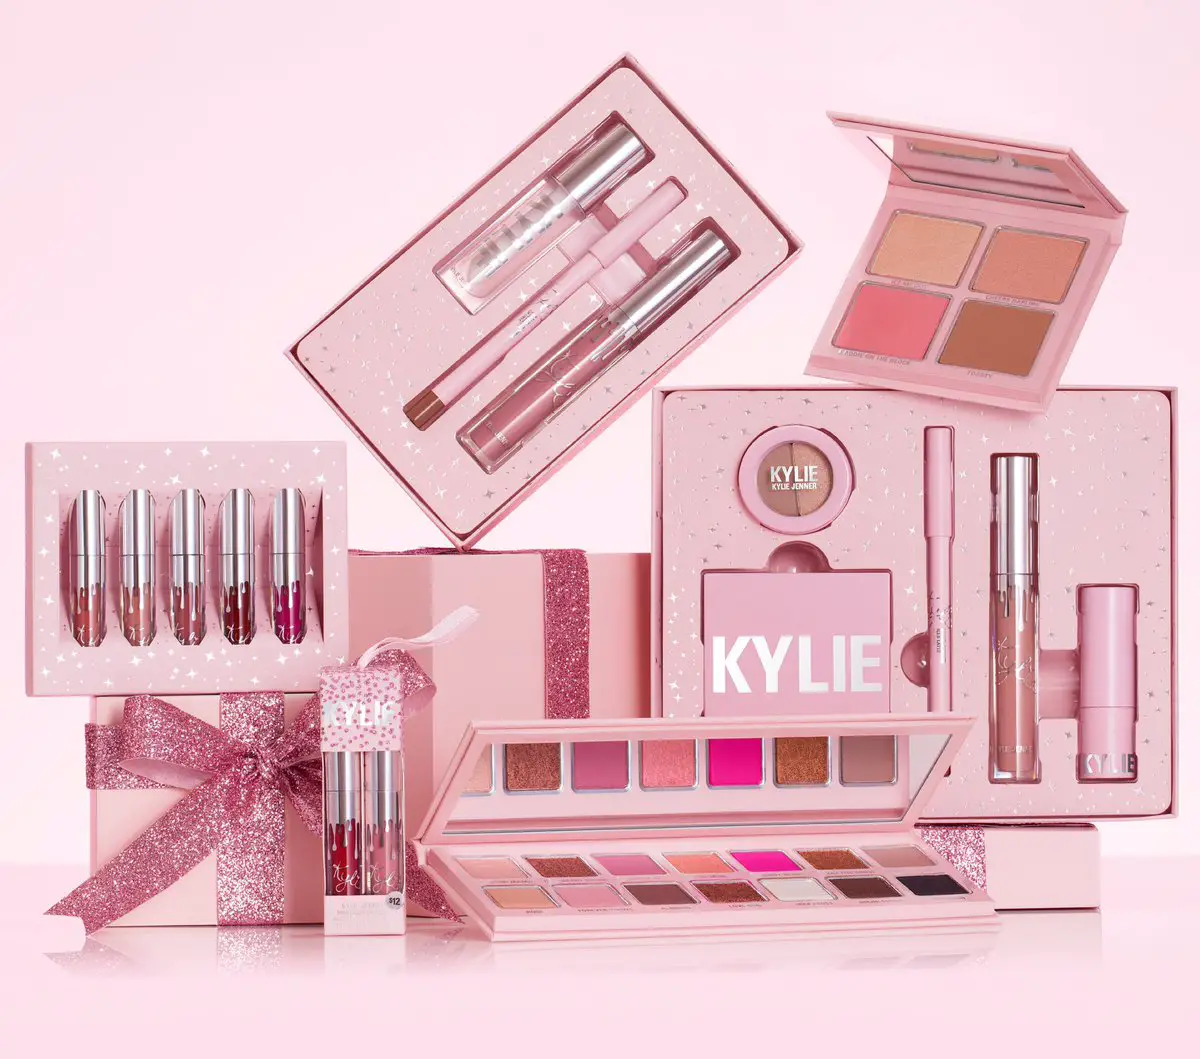 Productos de maquillaje Kylie: ¿Cuáles son los mejores? ¿Valen la pena?